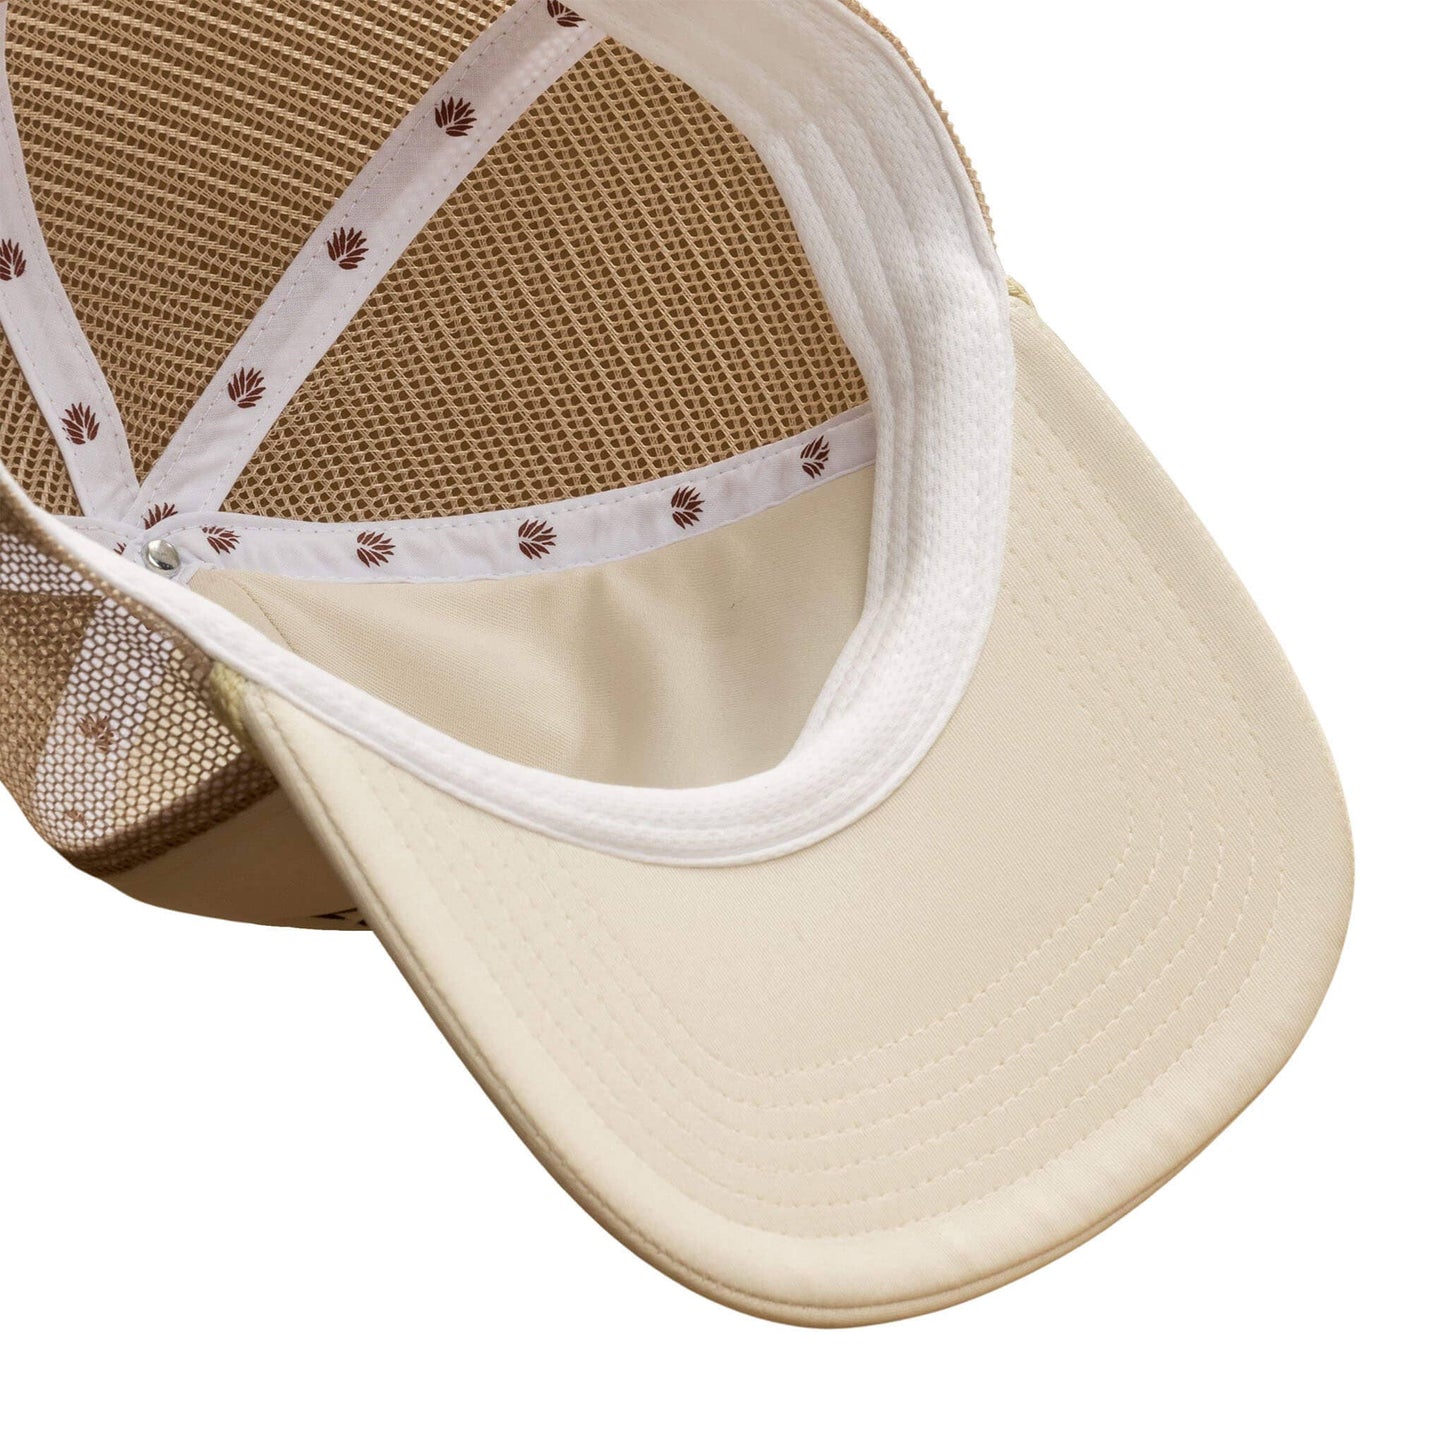 Cowboy Hat | White